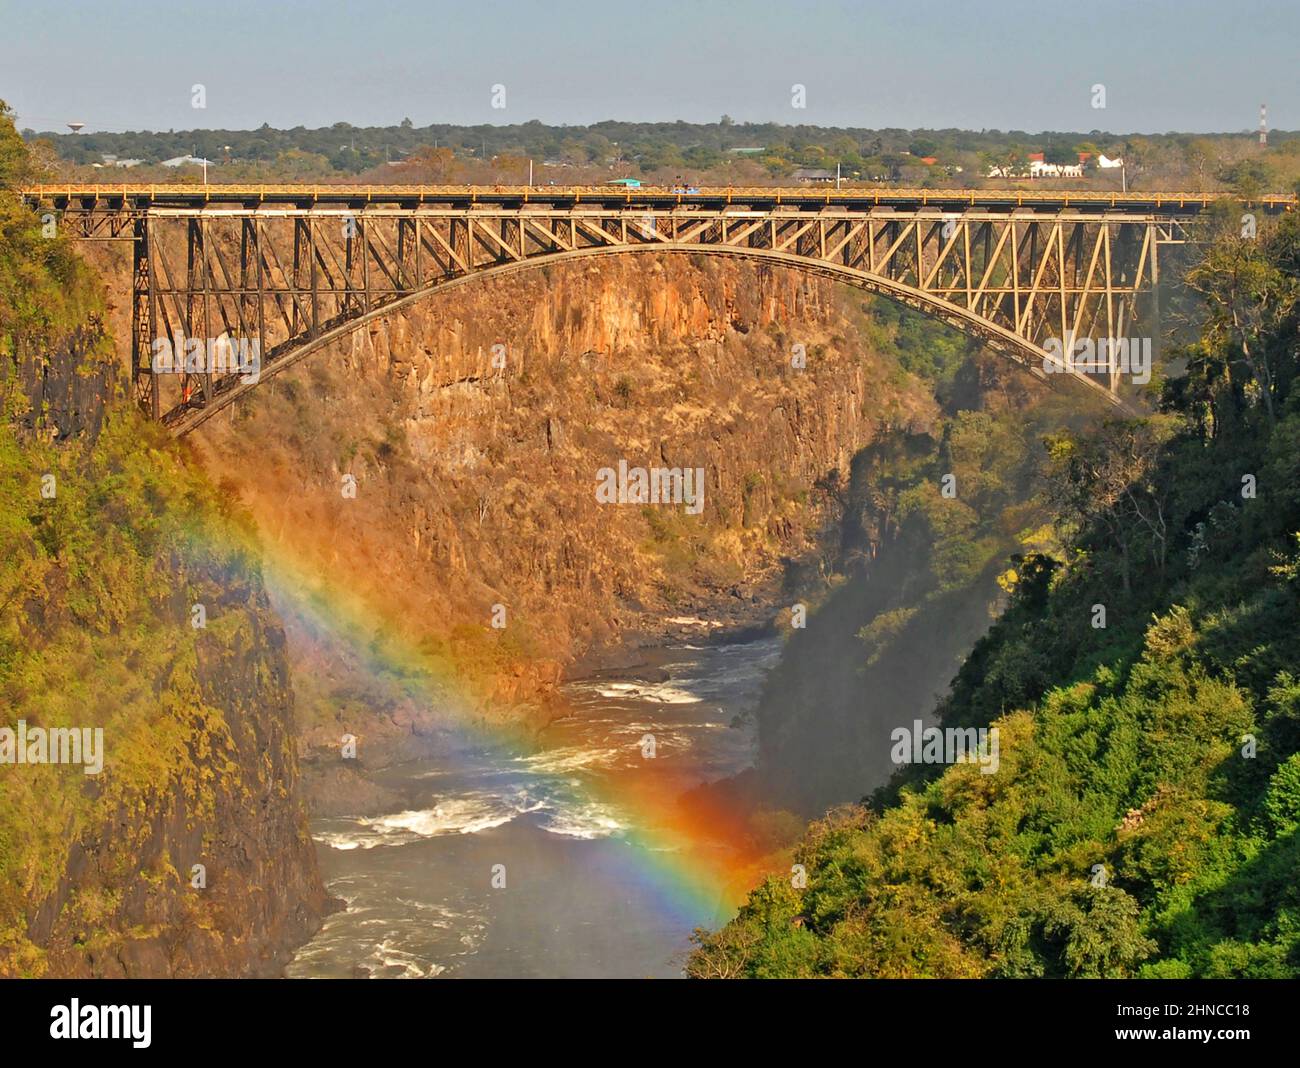 bridge on Zambezi river, Victoria Falls Bridge, Zimbabwe Stock Photo